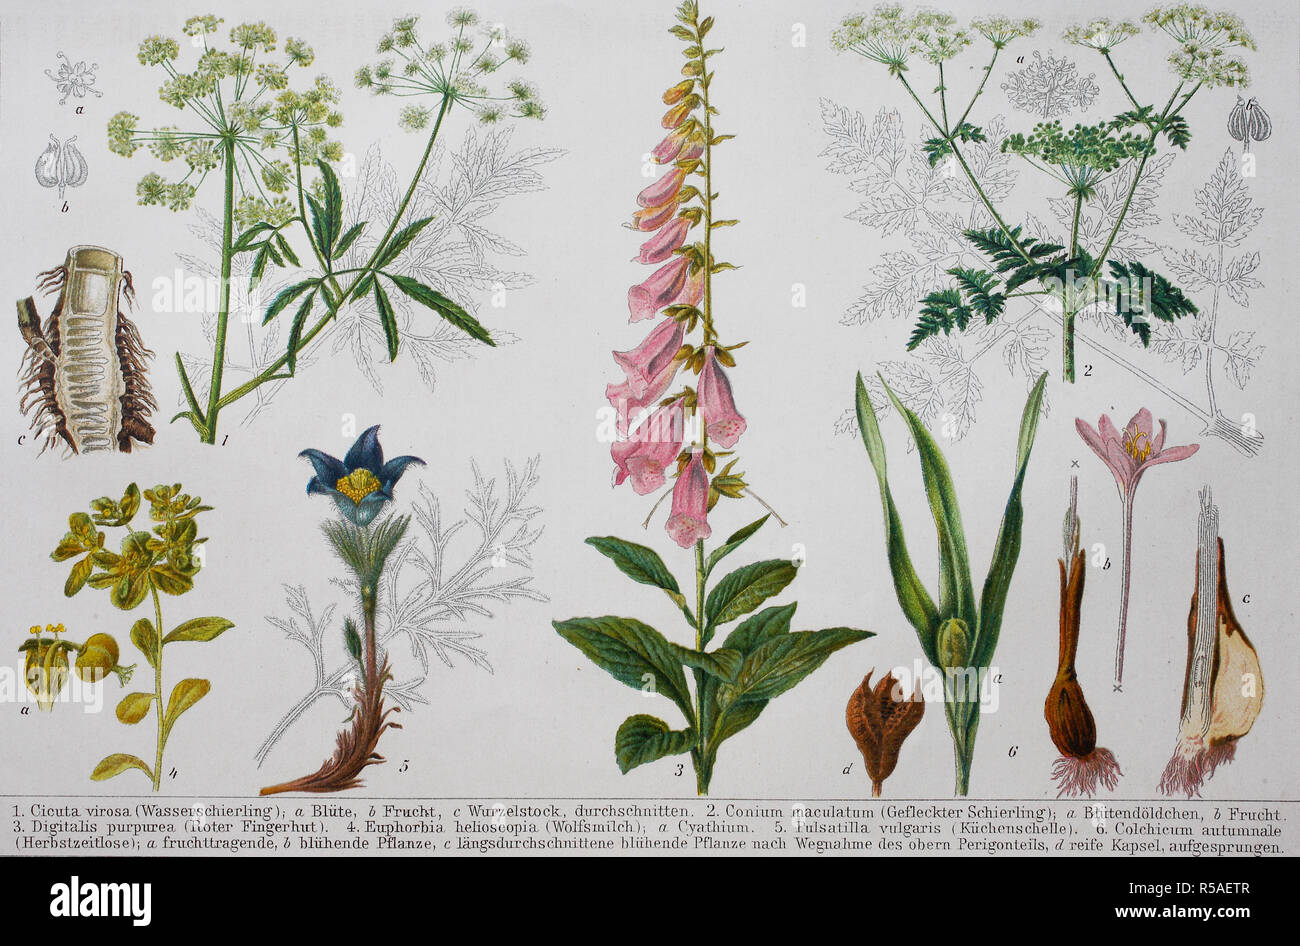 Historical image of various poisonous plants: Cicuta, Conium maculatum, Digitalis, Euphorbia, Pulsatilla, Colchicum, 1890 Stock Photo